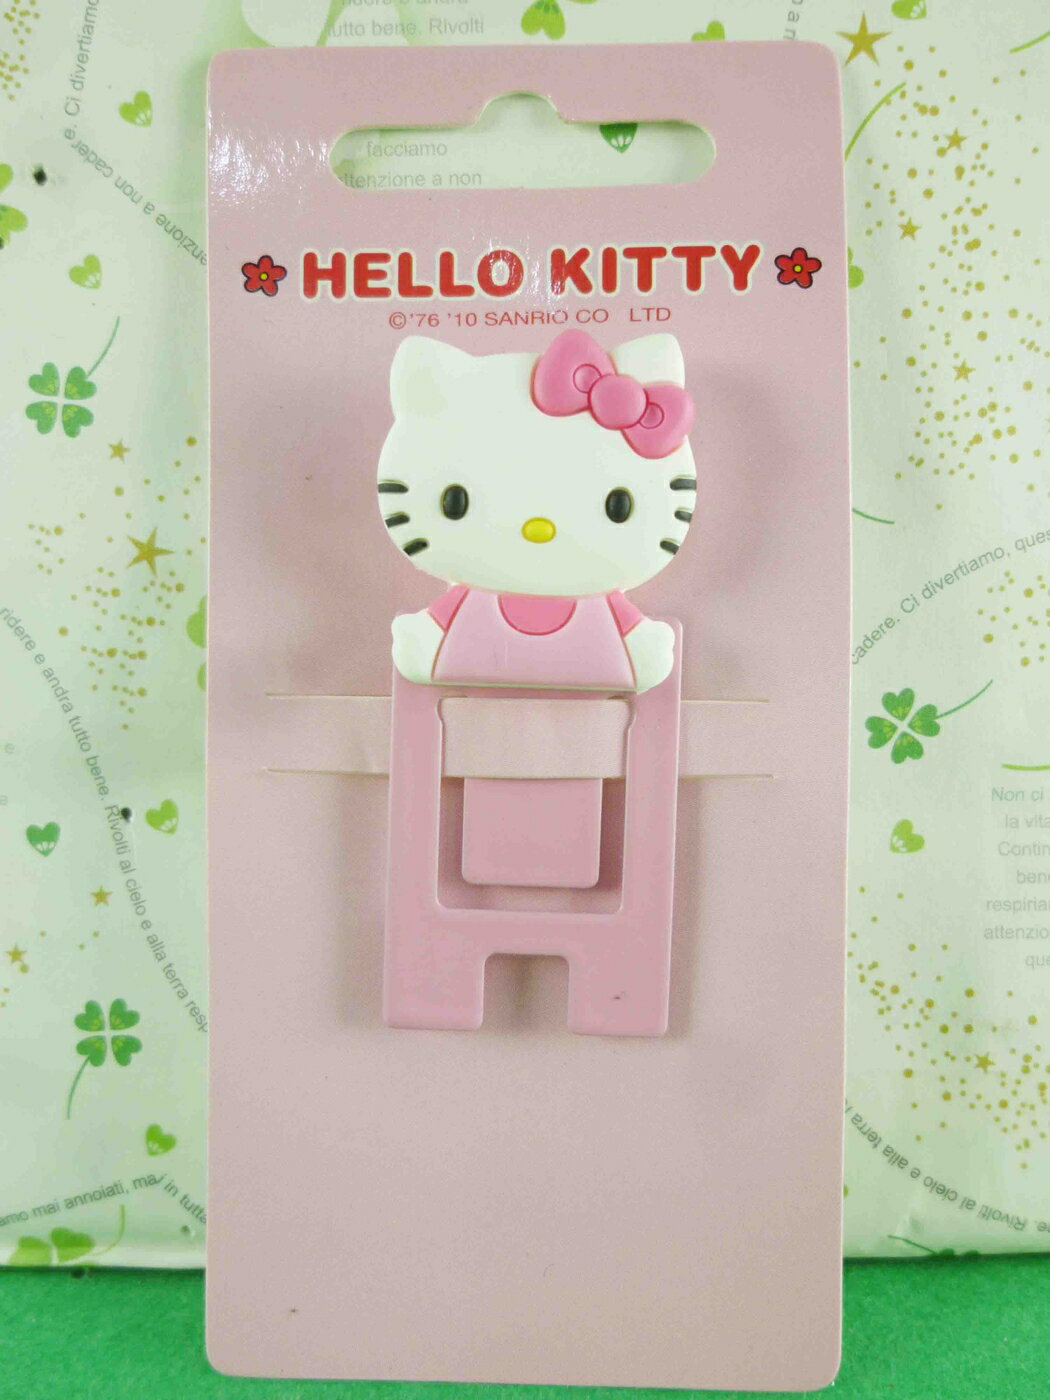 【震撼精品百貨】Hello Kitty 凱蒂貓 方書夾-粉色(大) 震撼日式精品百貨